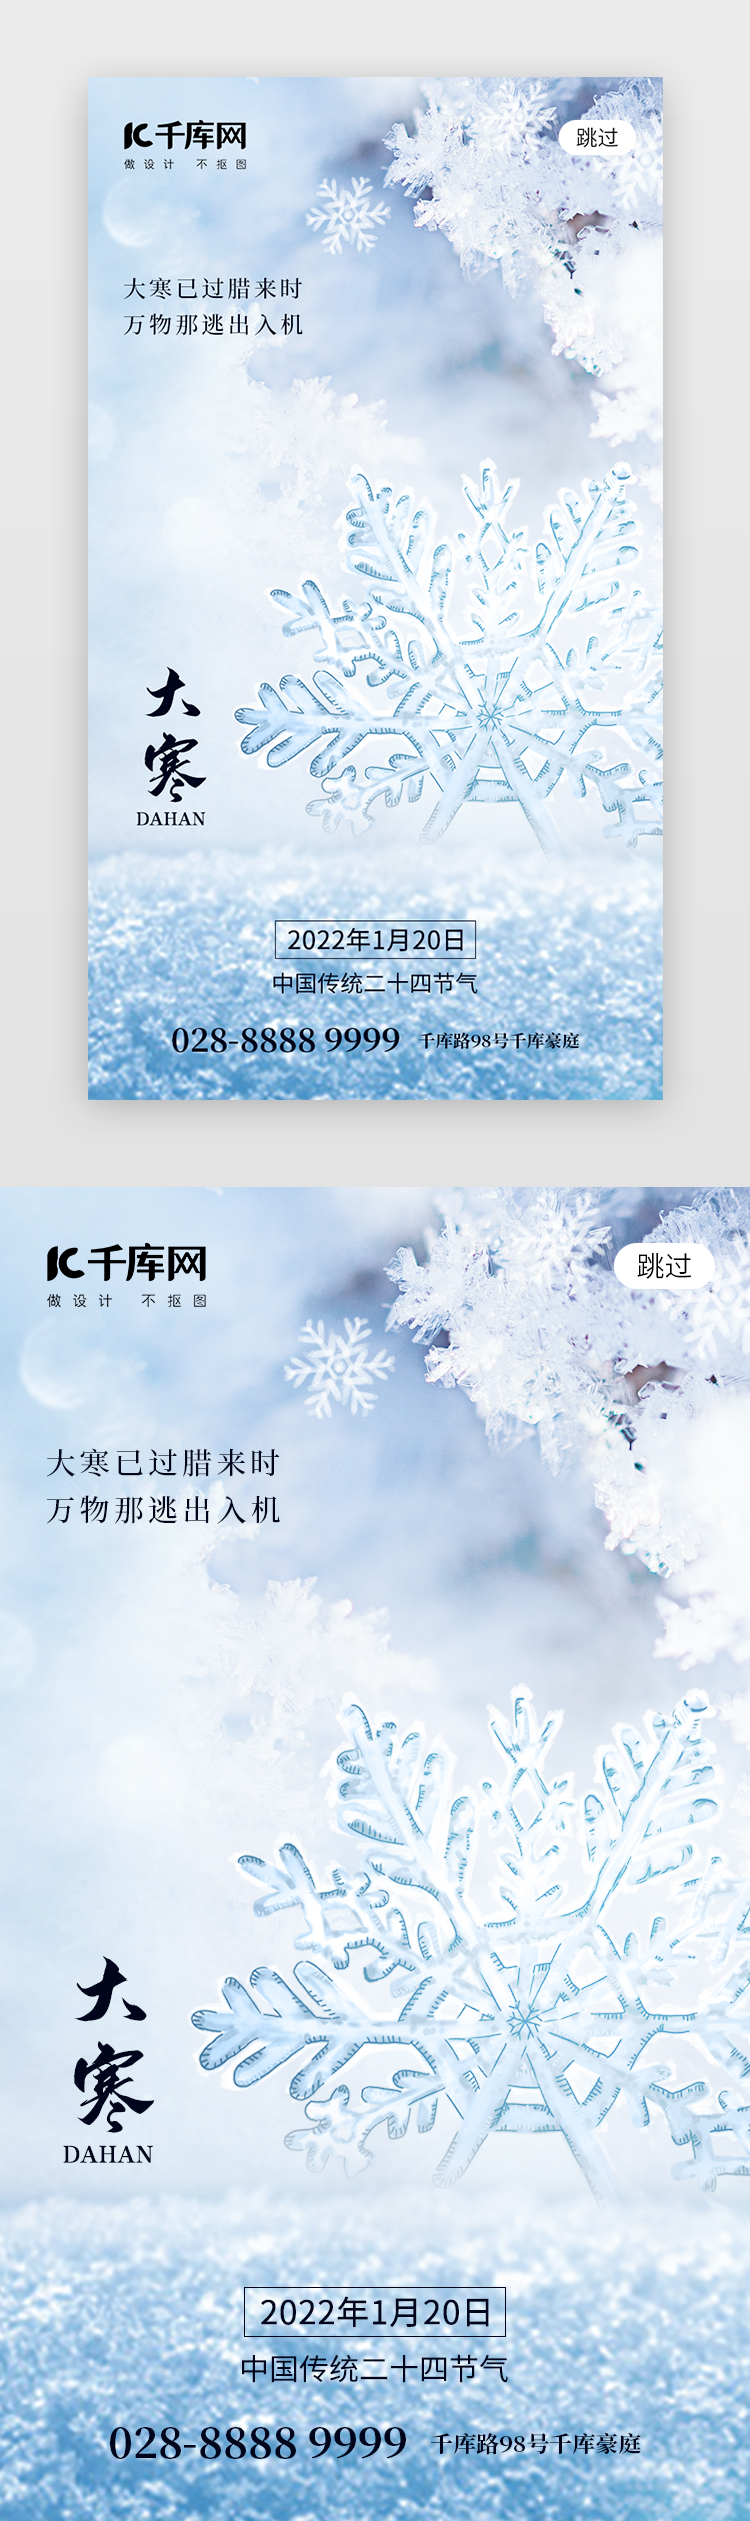 二十四节气大寒app闪屏创意蓝色雪花图片